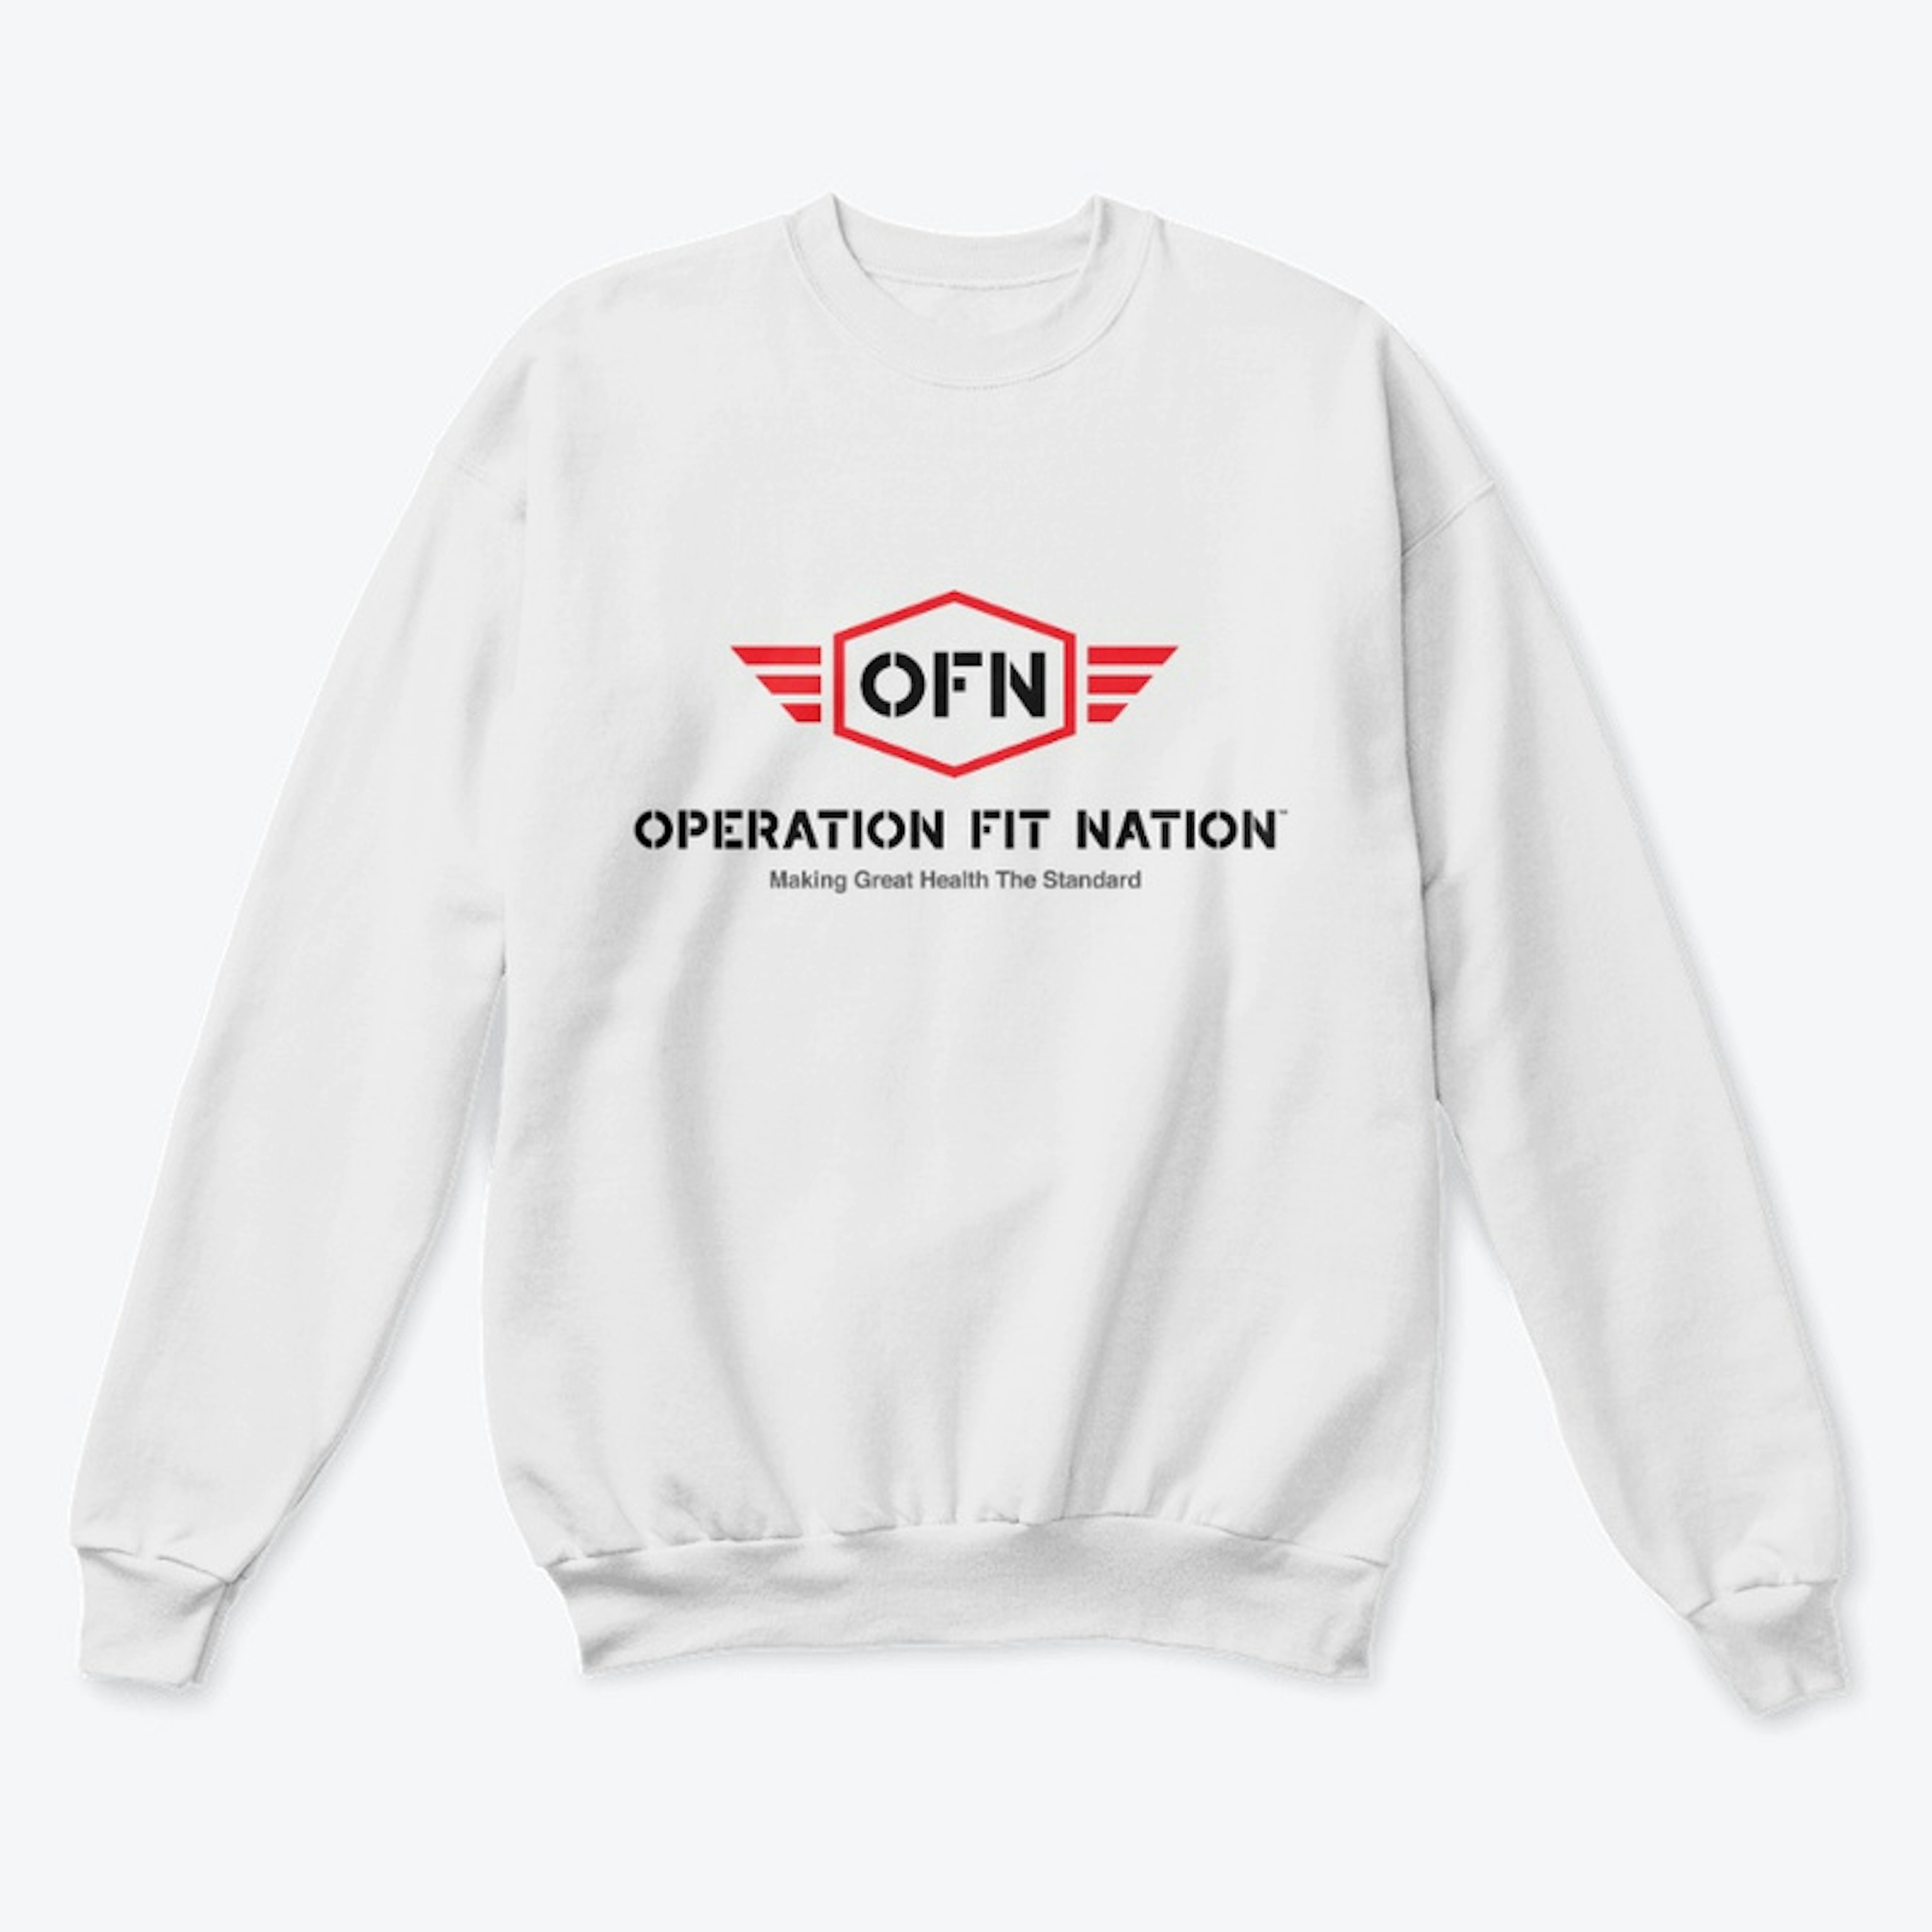 OFN Hoodies/Sweatshirts